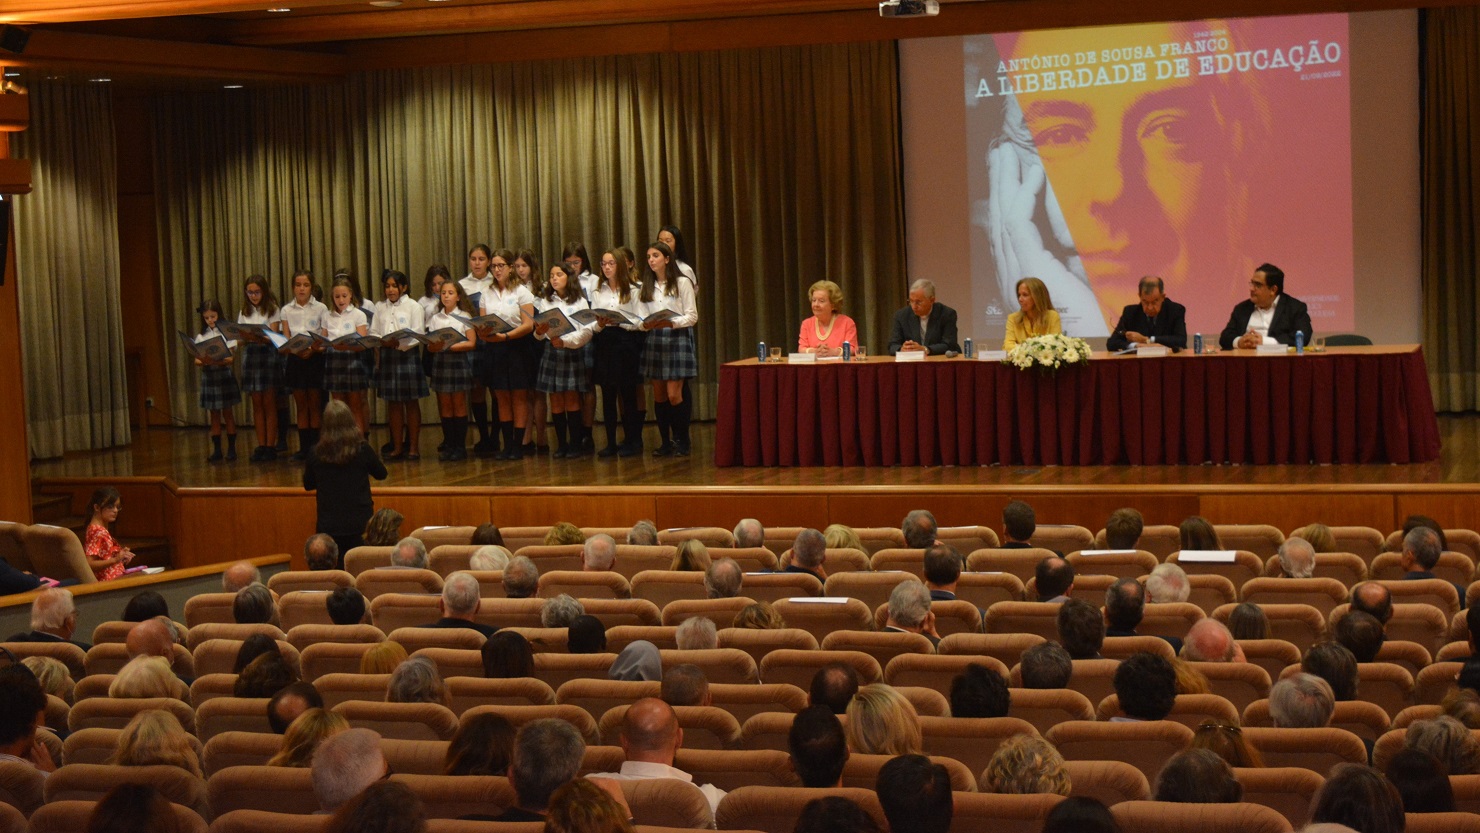 Homenagem a Sousa Franco e lançamento do livro - António de Sousa Franco e a liberdade de educação